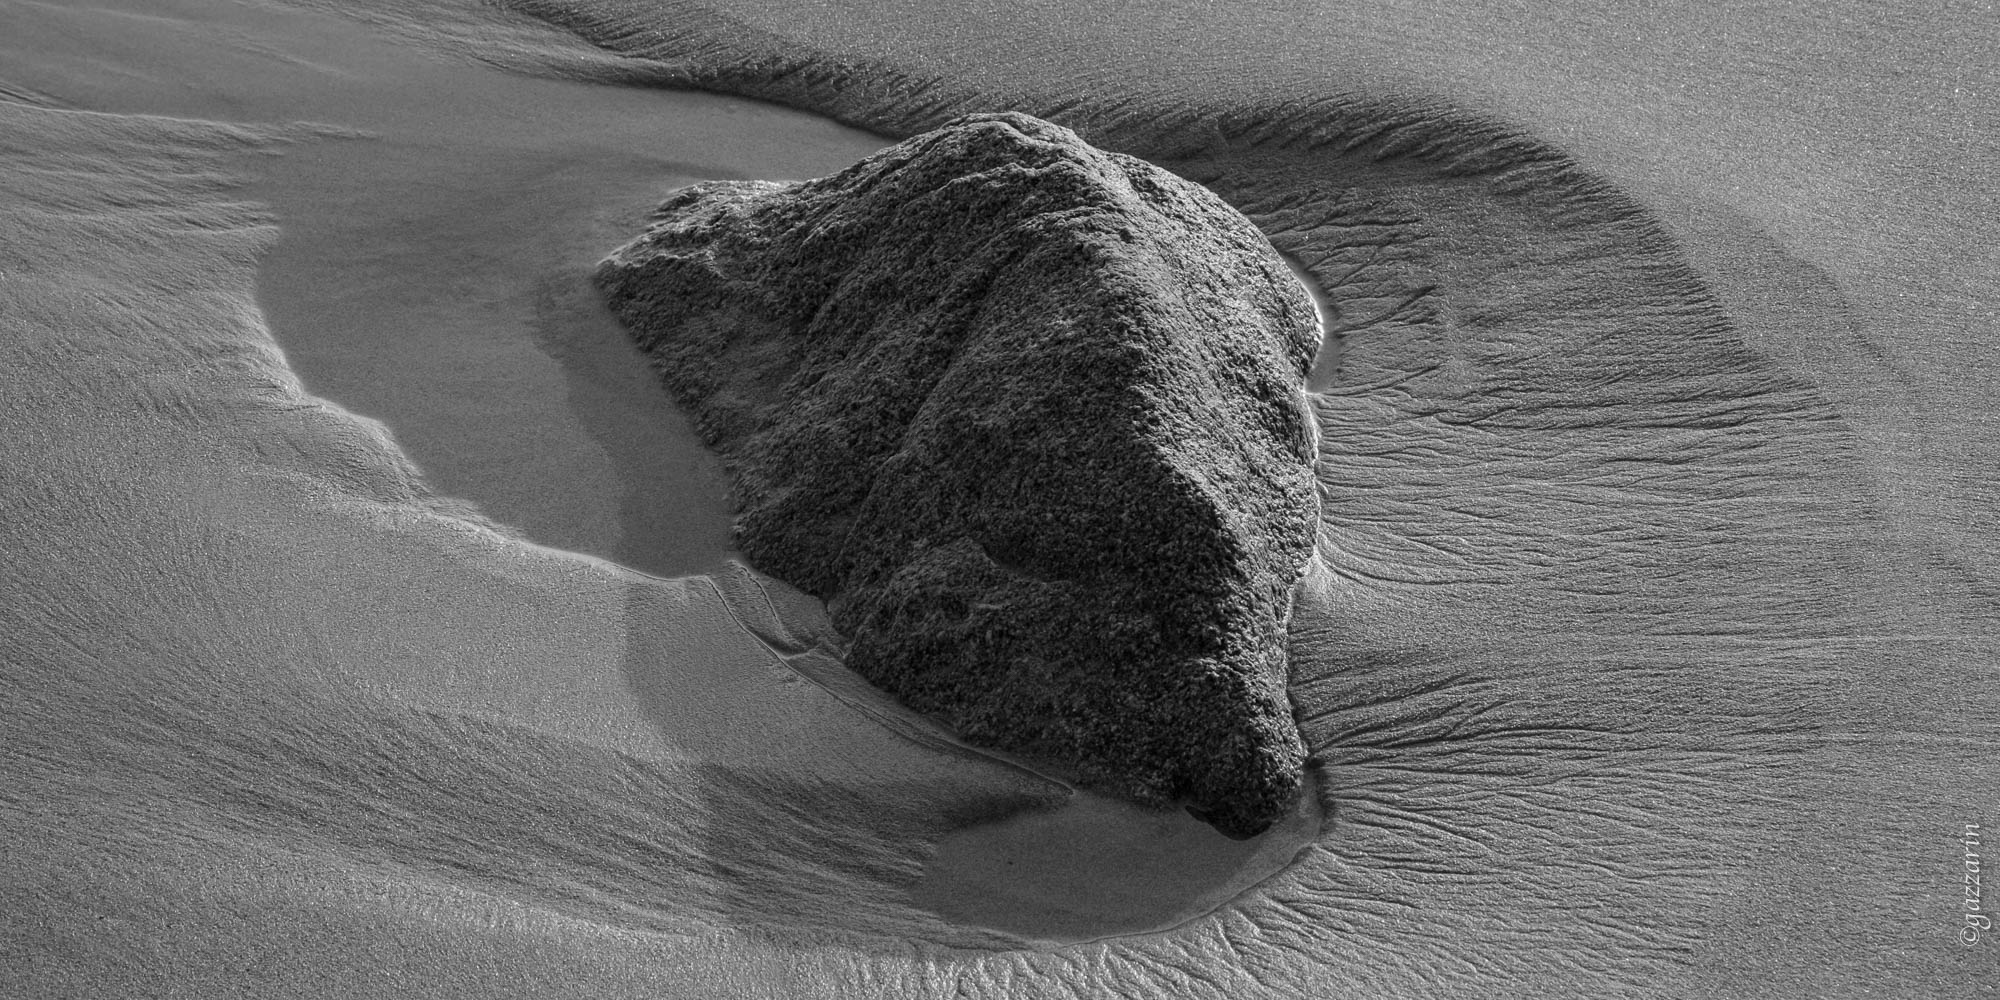 Stein im Sand (Sardinien)